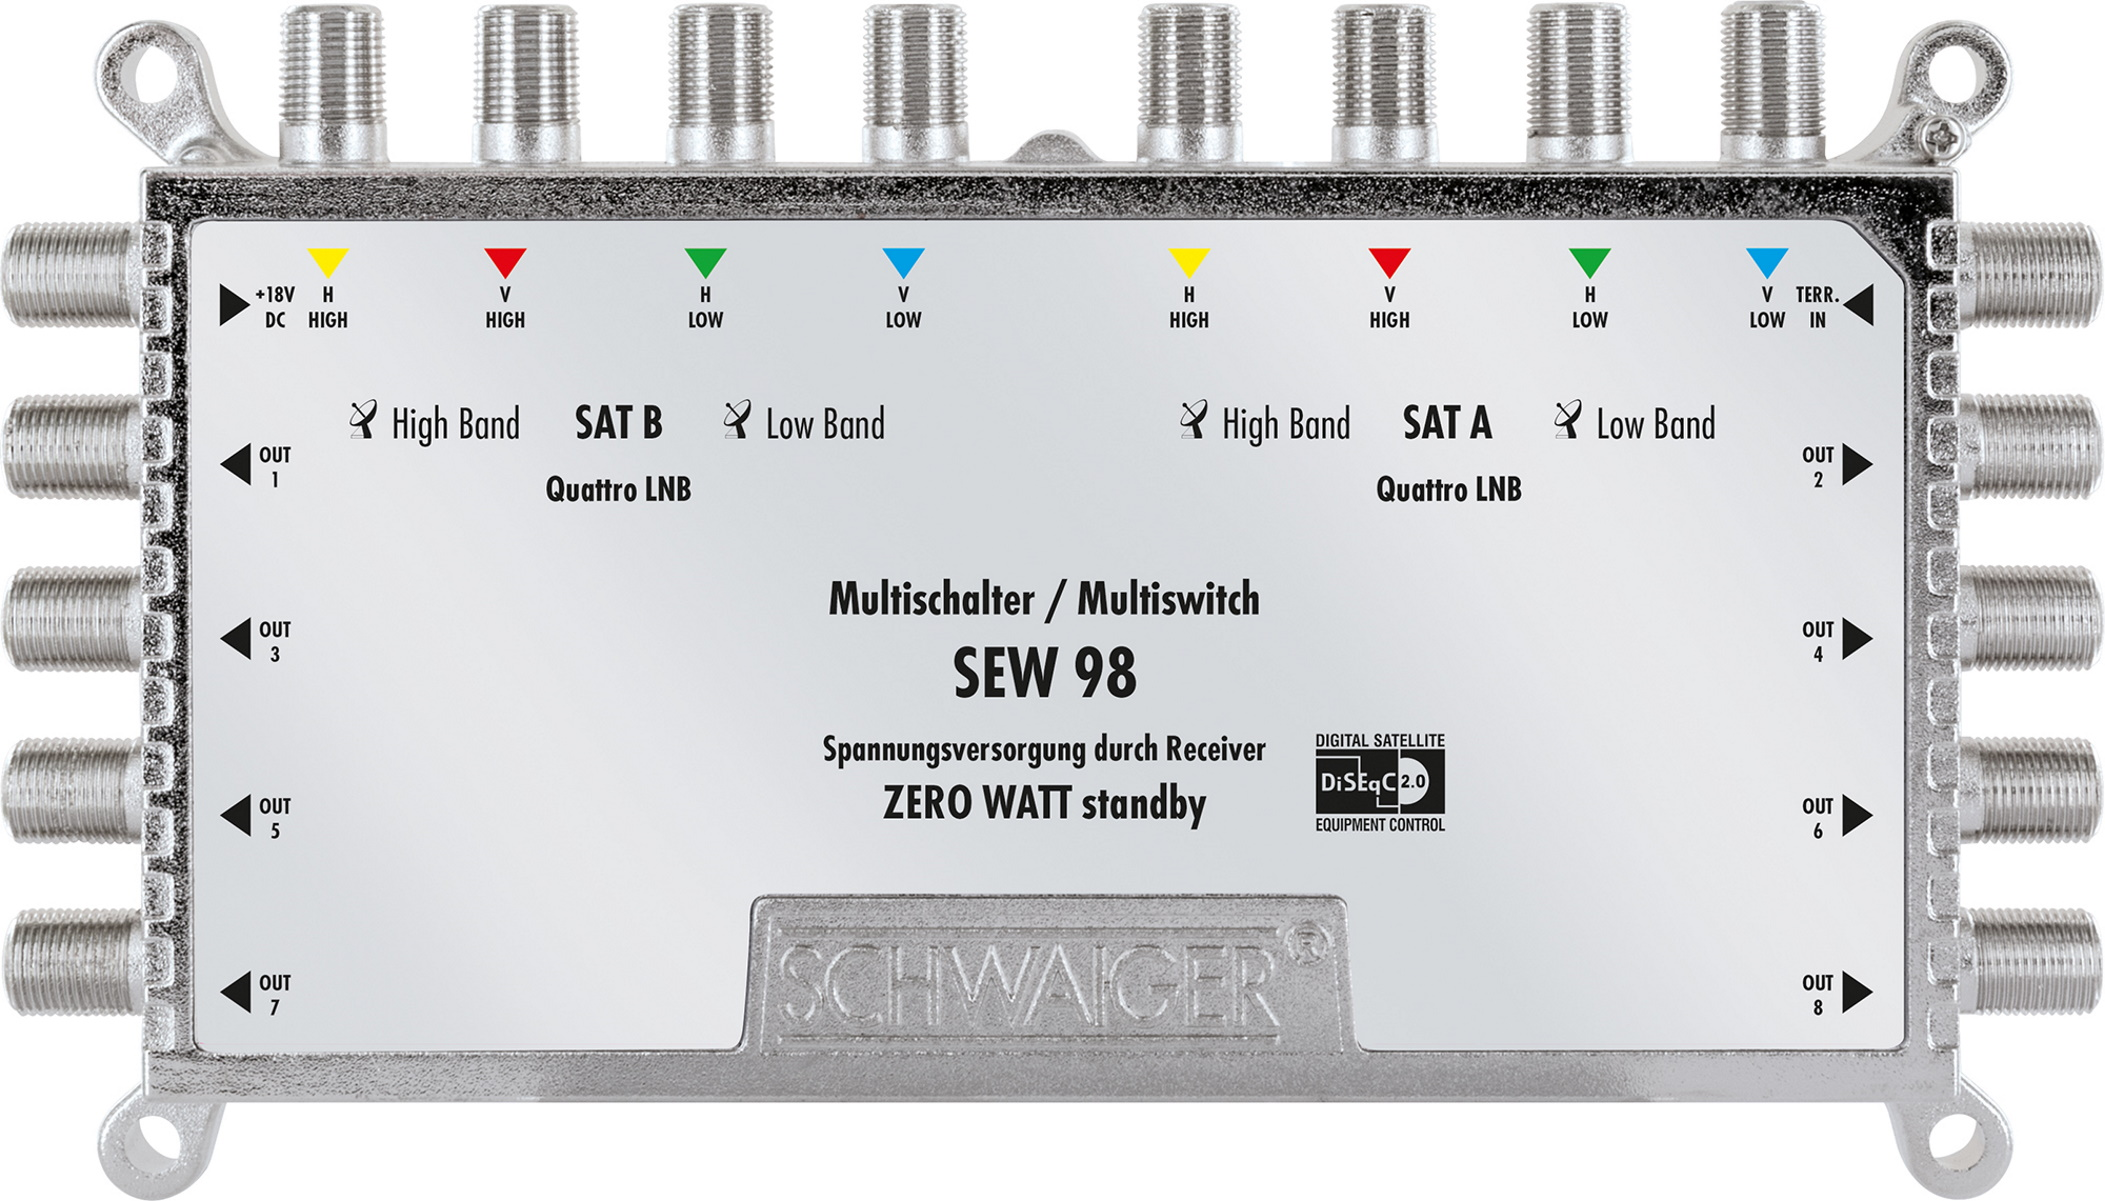 SCHWAIGER -SEW98 531- SAT 8 Multischalter → 9